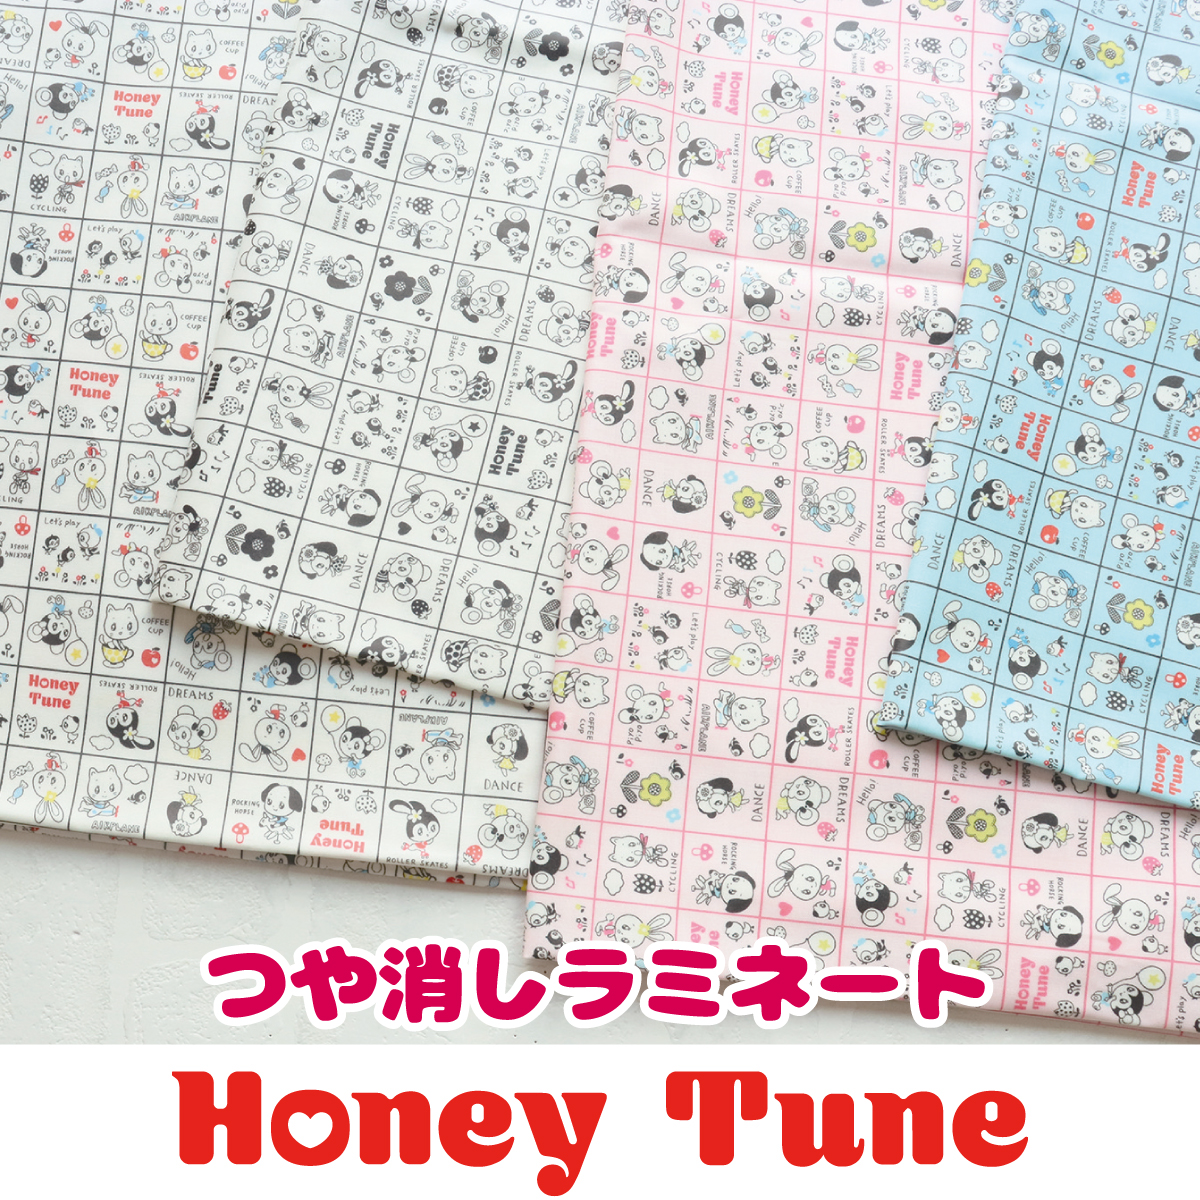 HT30000L-4 Honey Tune 2021 ハニーチューン「つや消しラミネート」 m単位 (m)